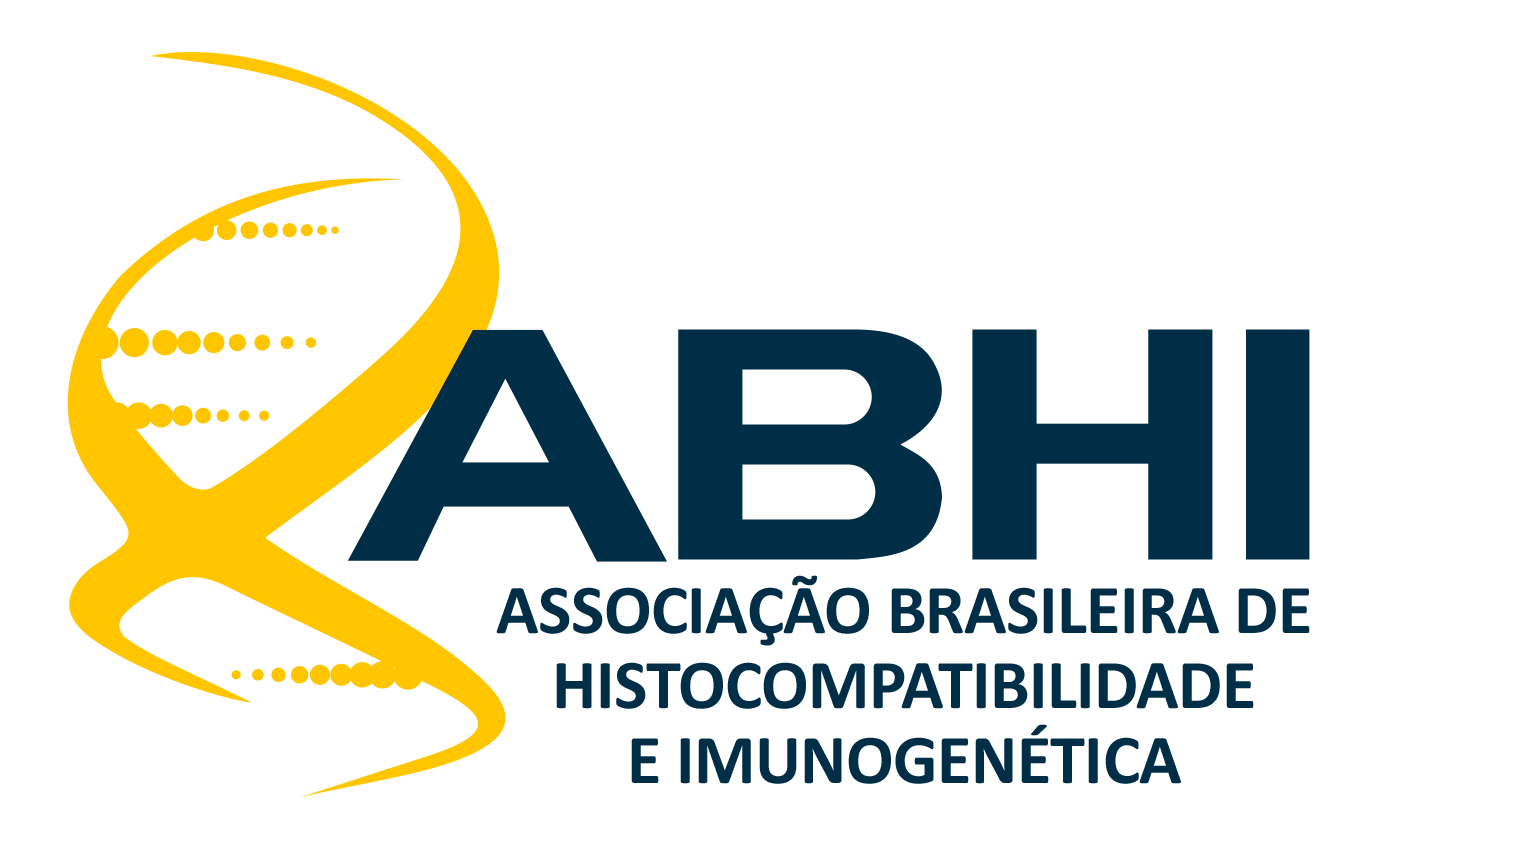 ABHI Assossiação Brabileira de Histocompatibilidade Internacional